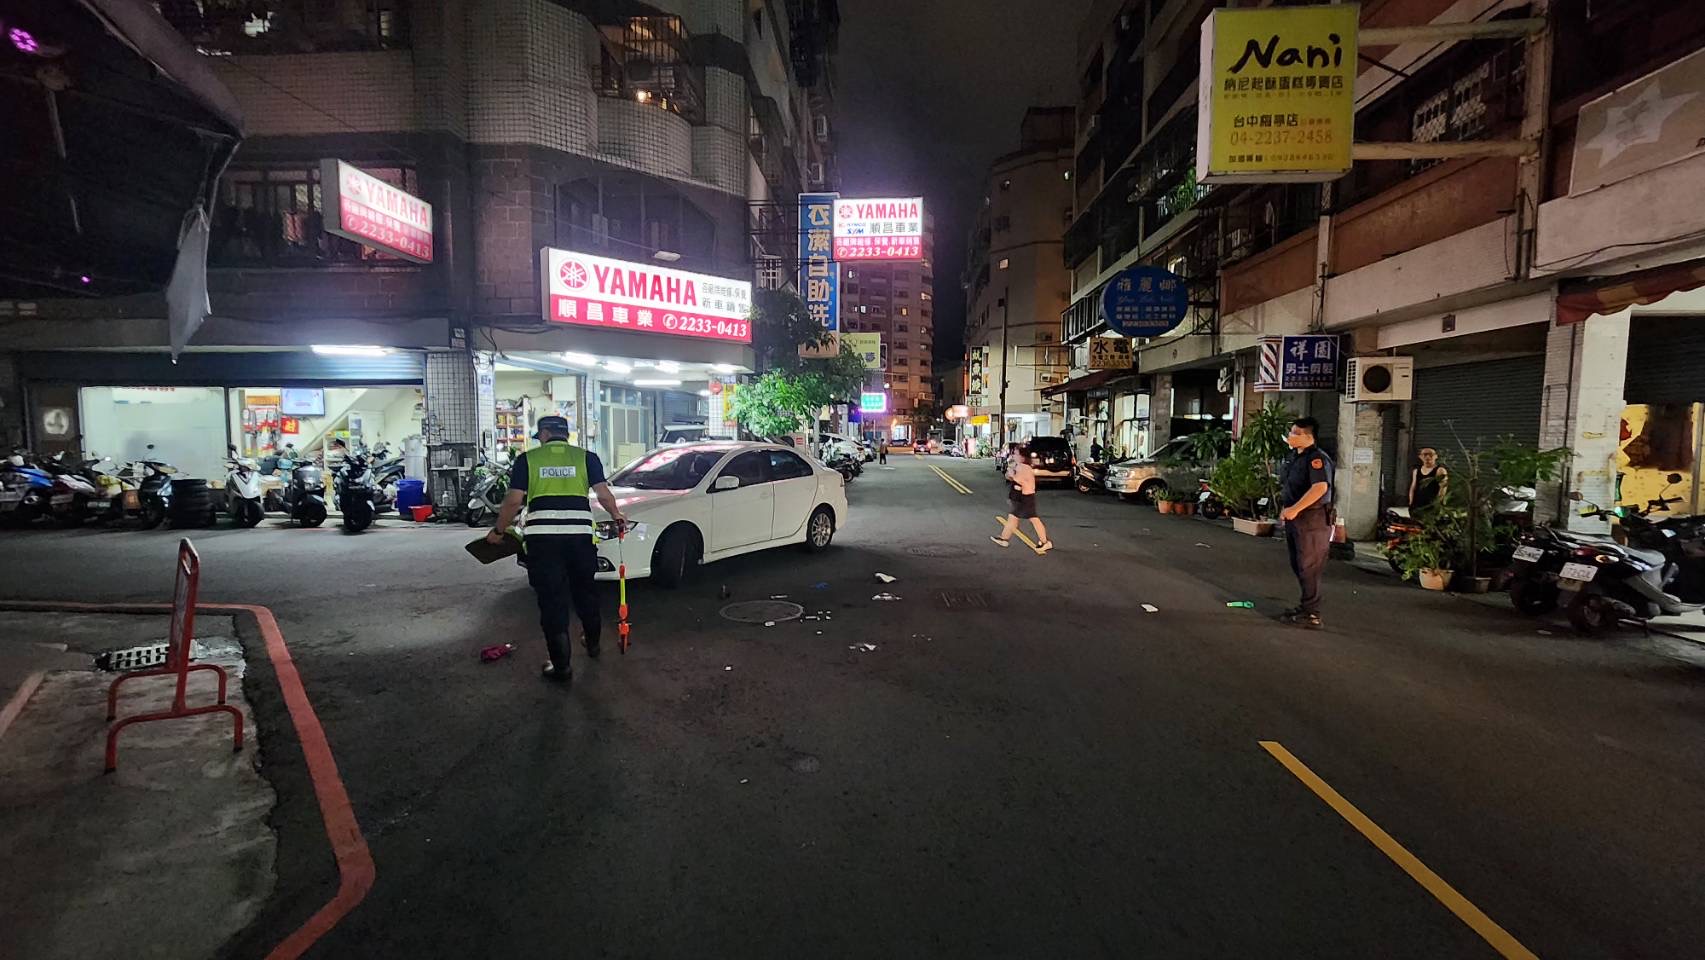 台中市六旬刘姓妇人在今晚步行经过北区时，被曾女开车回转撞上，送医不治。记者陈宏睿／翻摄